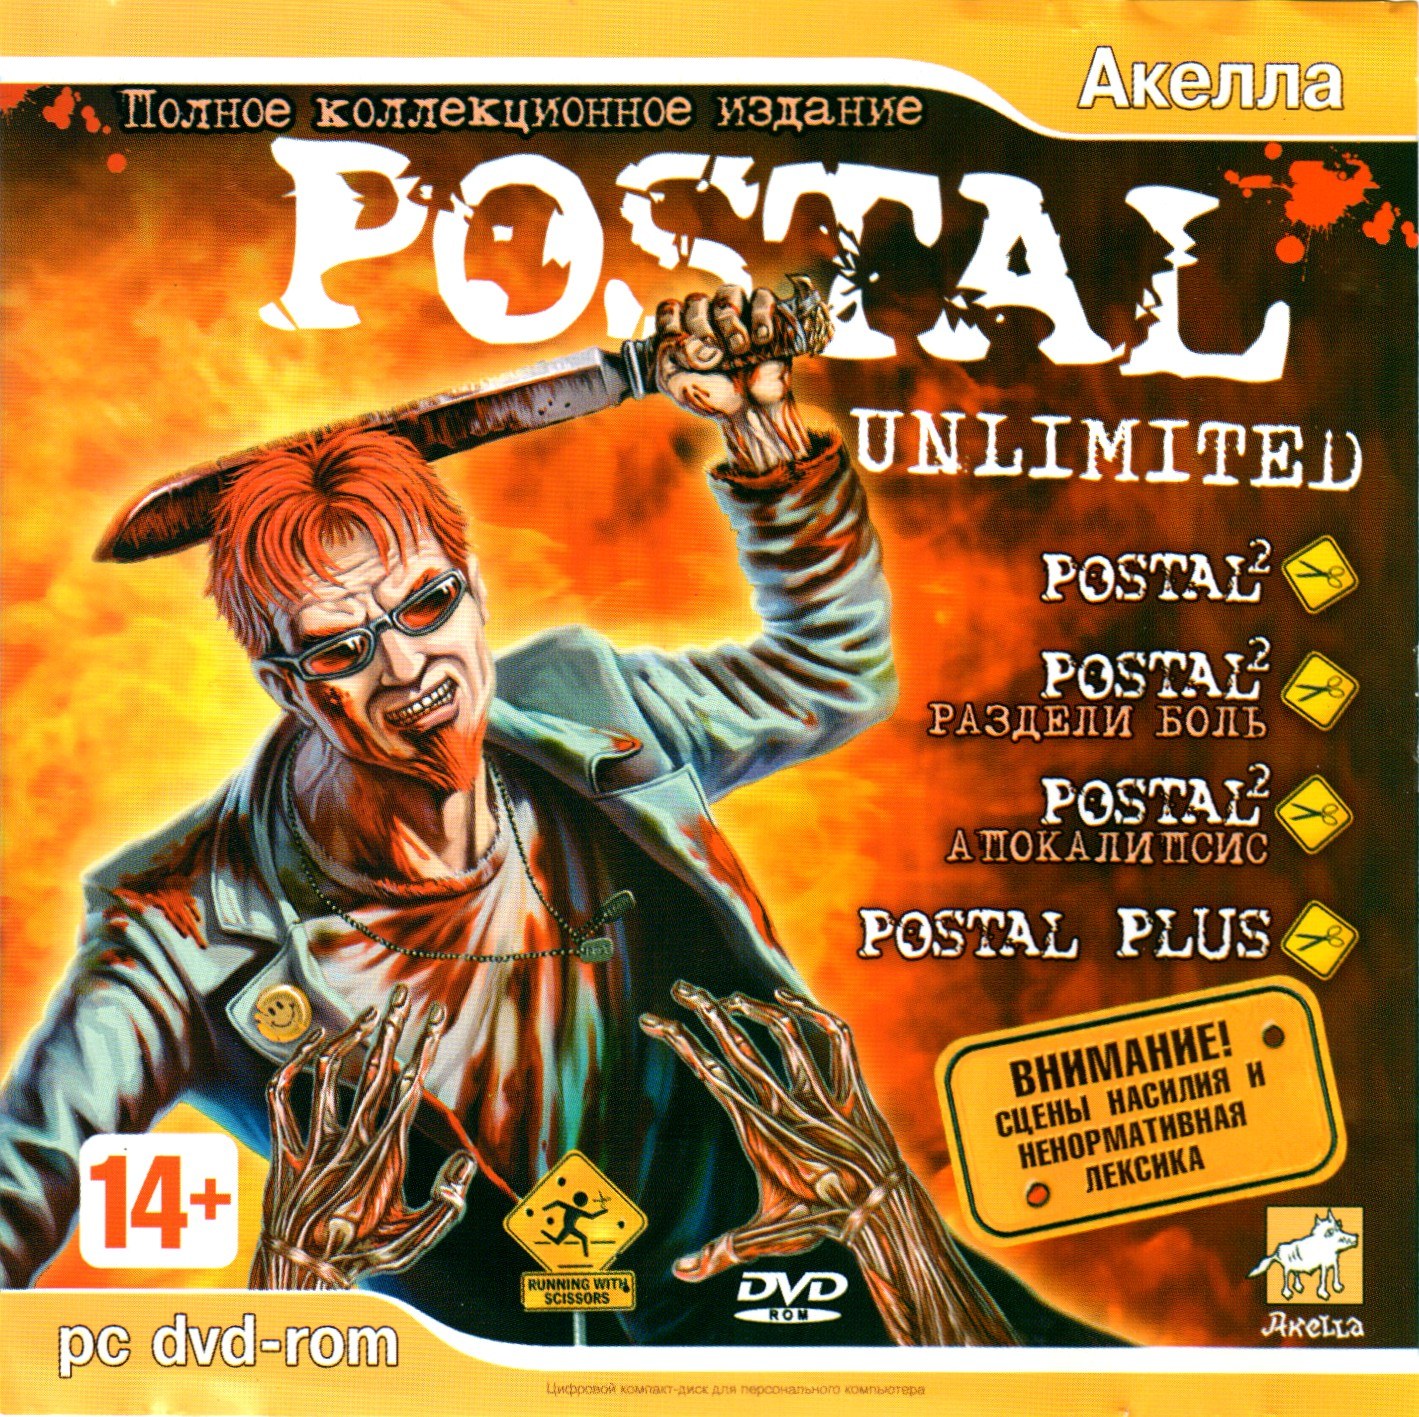 Postal 2 awp delete review торрент фото 36